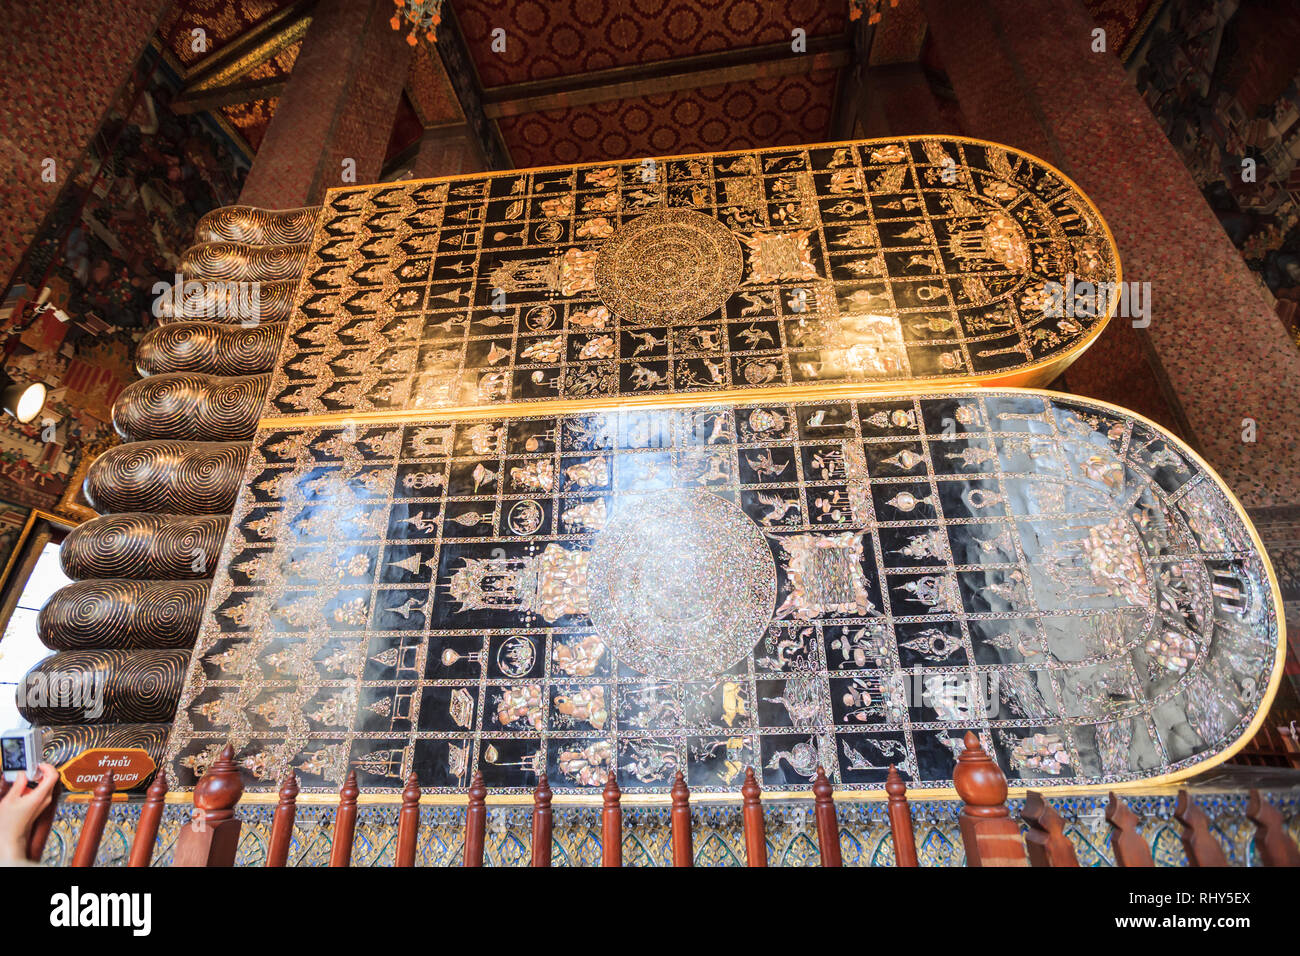 Les croyances dans les symboles auspicieux 108 dans le Bouddha de l'empreinte le Bouddha couché de Wat Pho, venait d'écritures anciennes du Sri Lanka. Thaïlande Banque D'Images